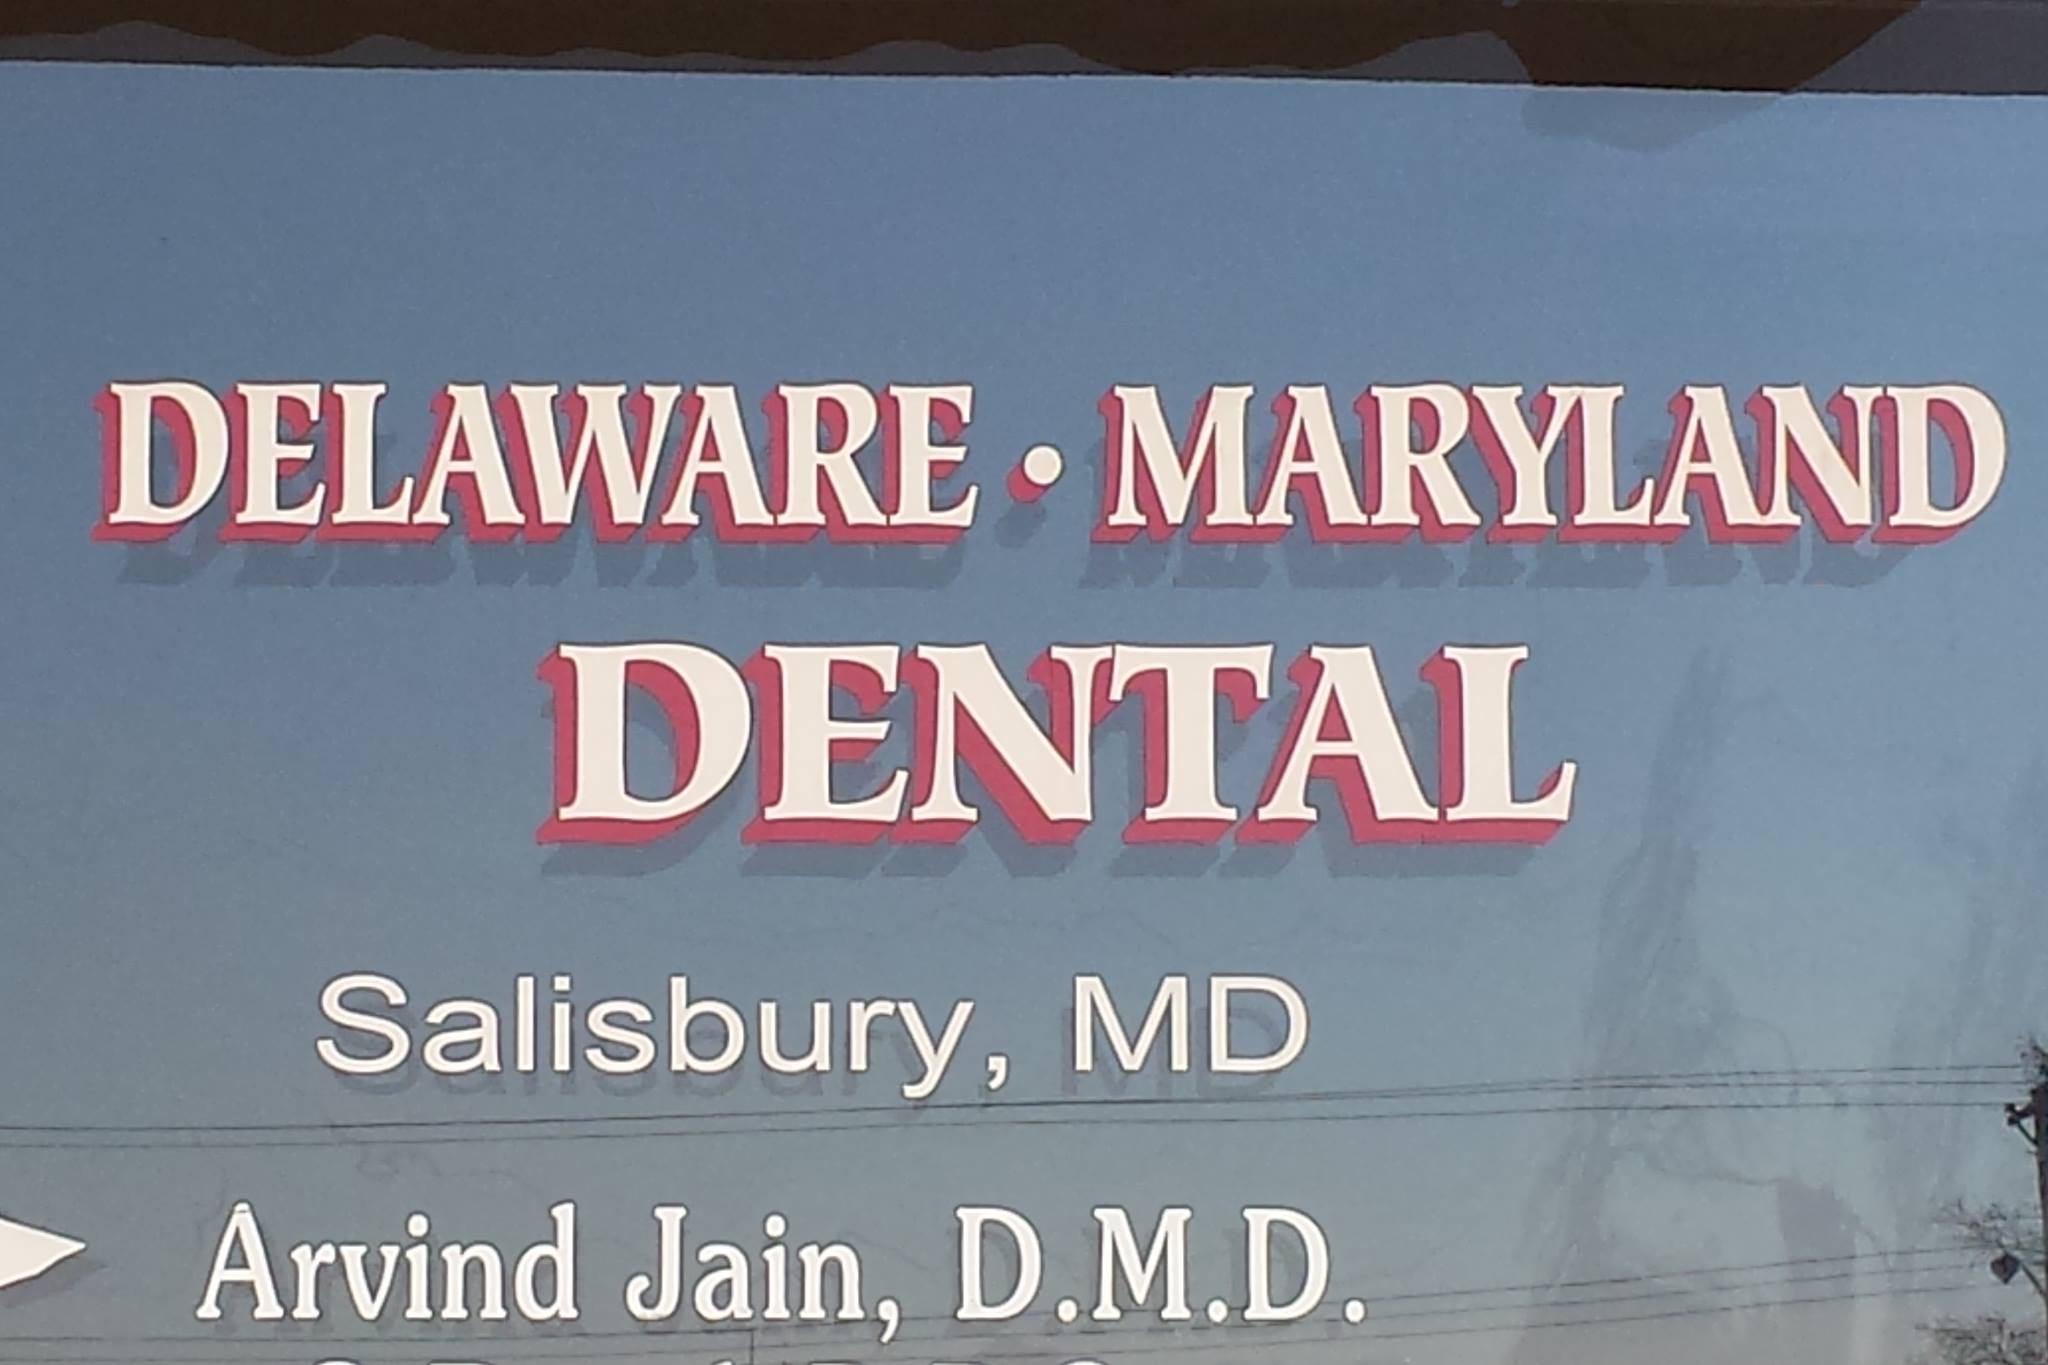 Company logo of Delaware Maryland Dental